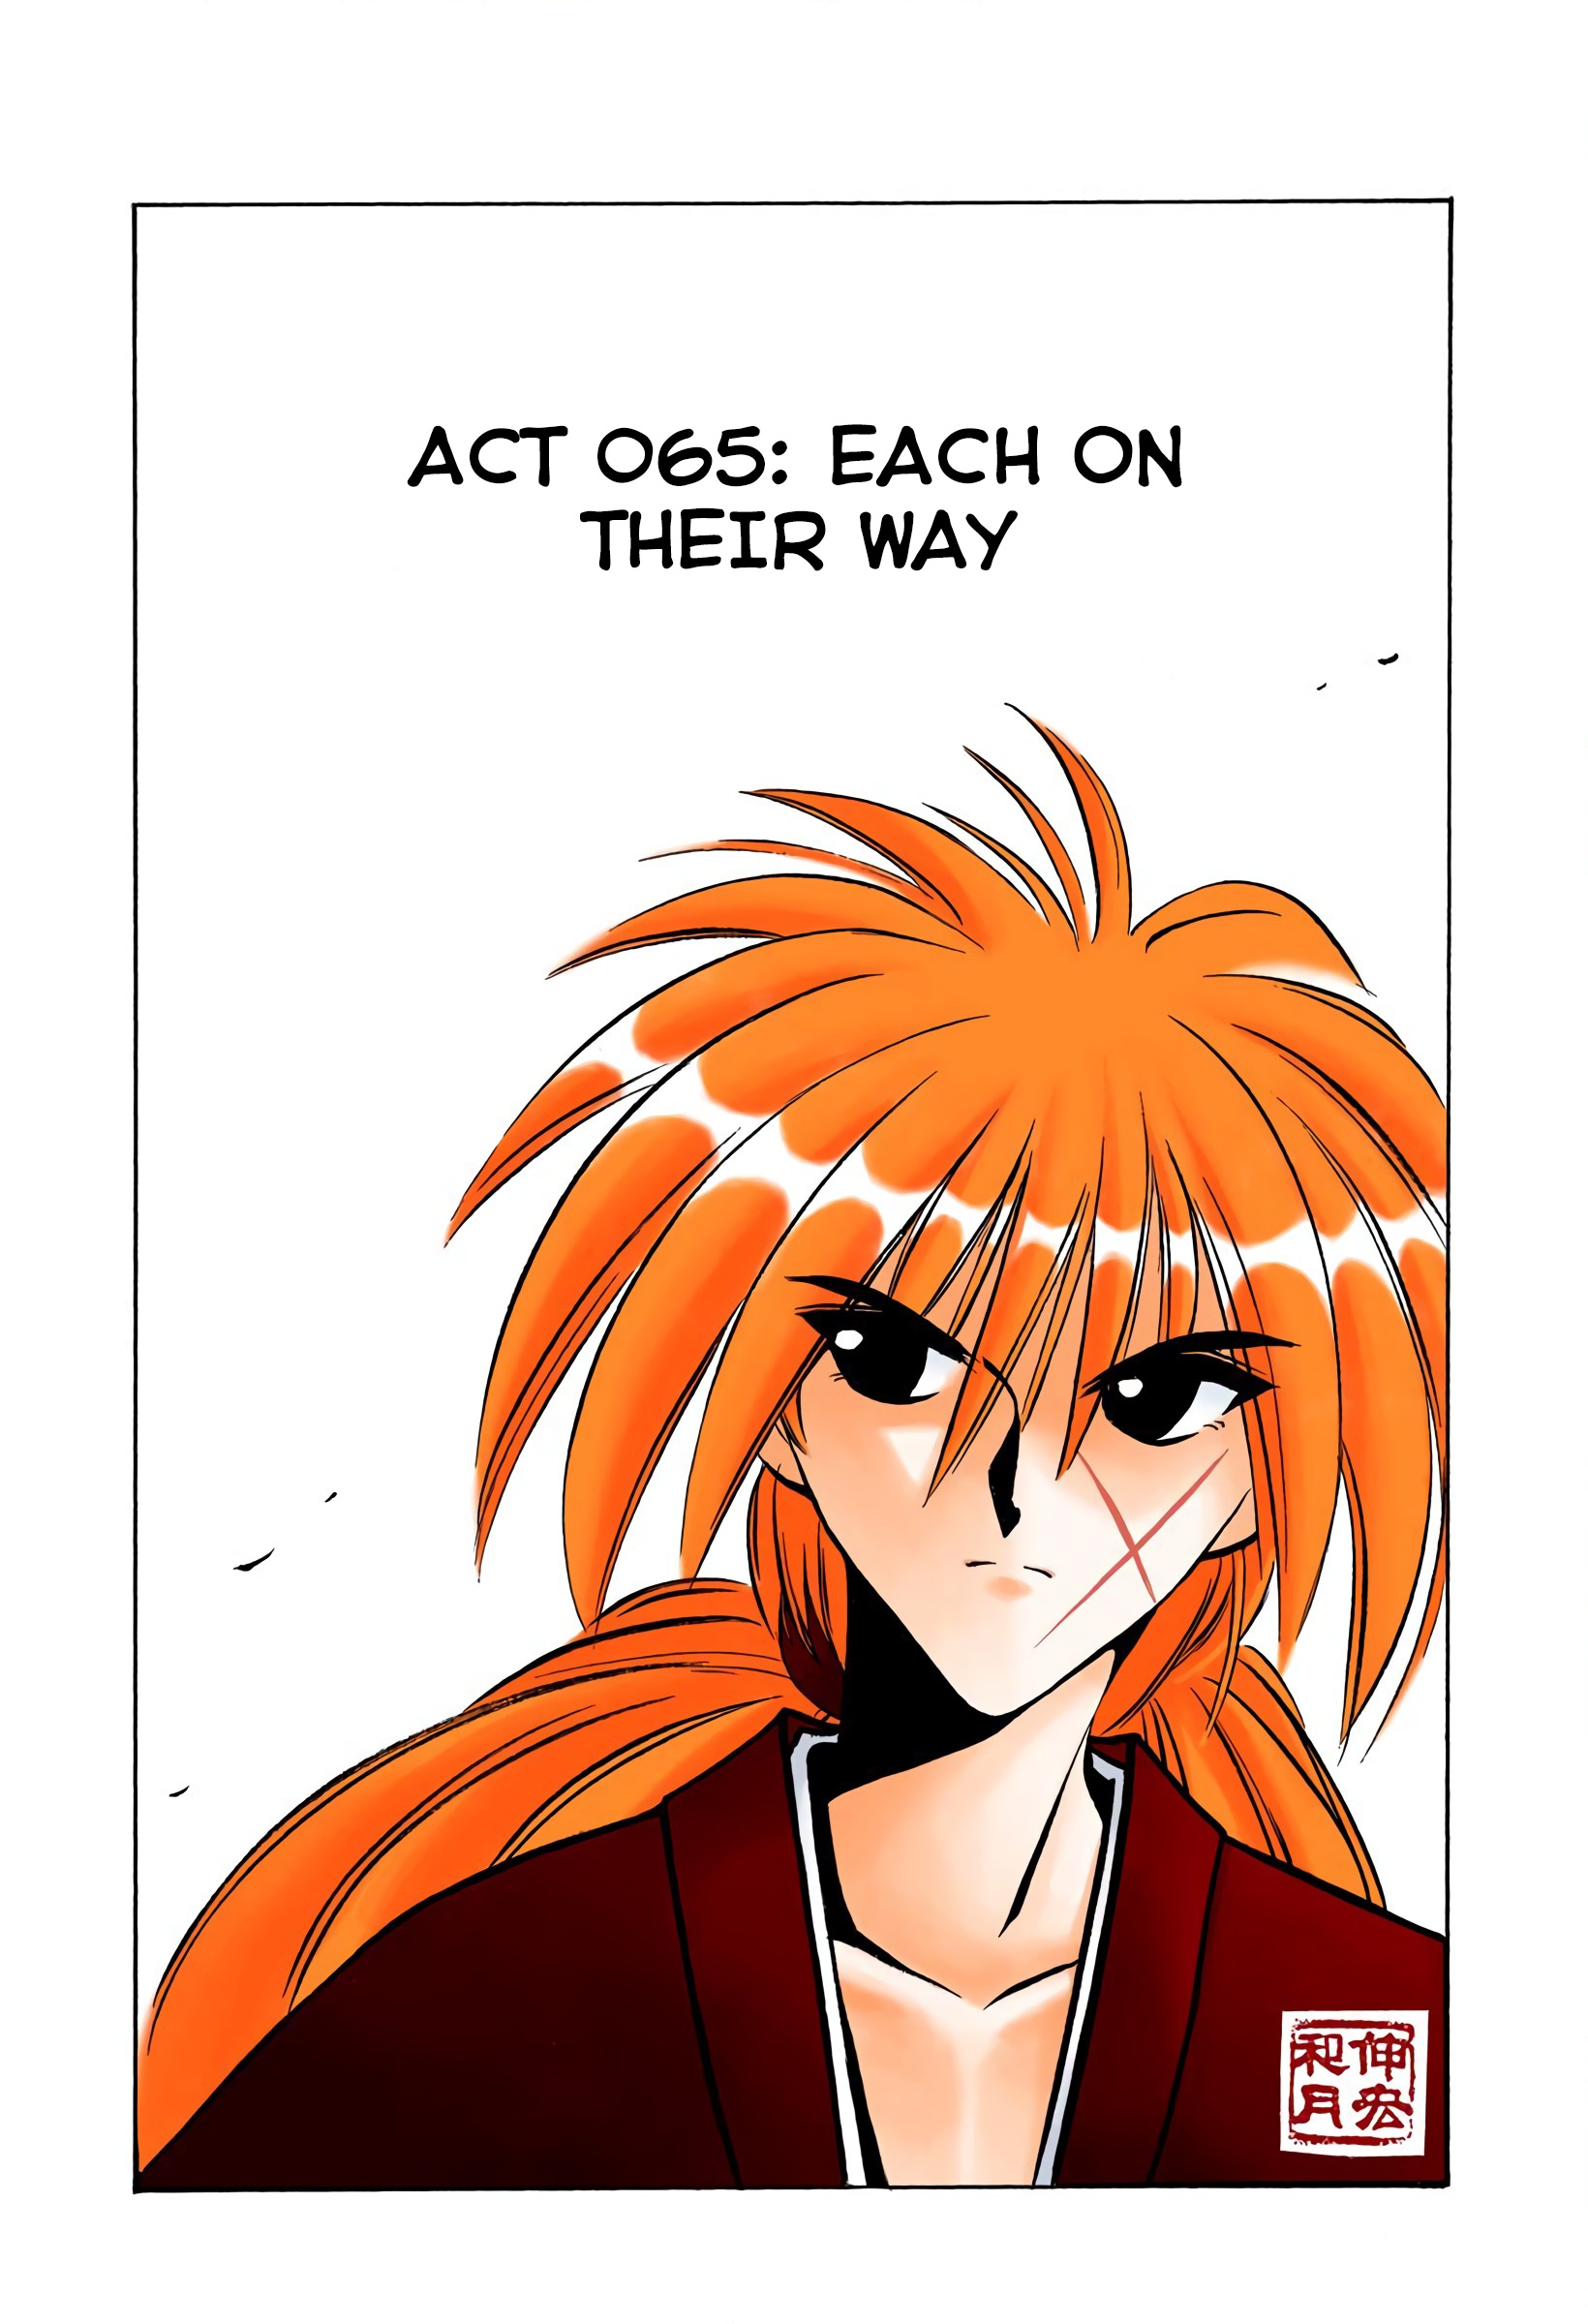 Rurouni Kenshin: Meiji Kenkaku Romantan - Digital Colored Comics Vol.8 Chapter 65